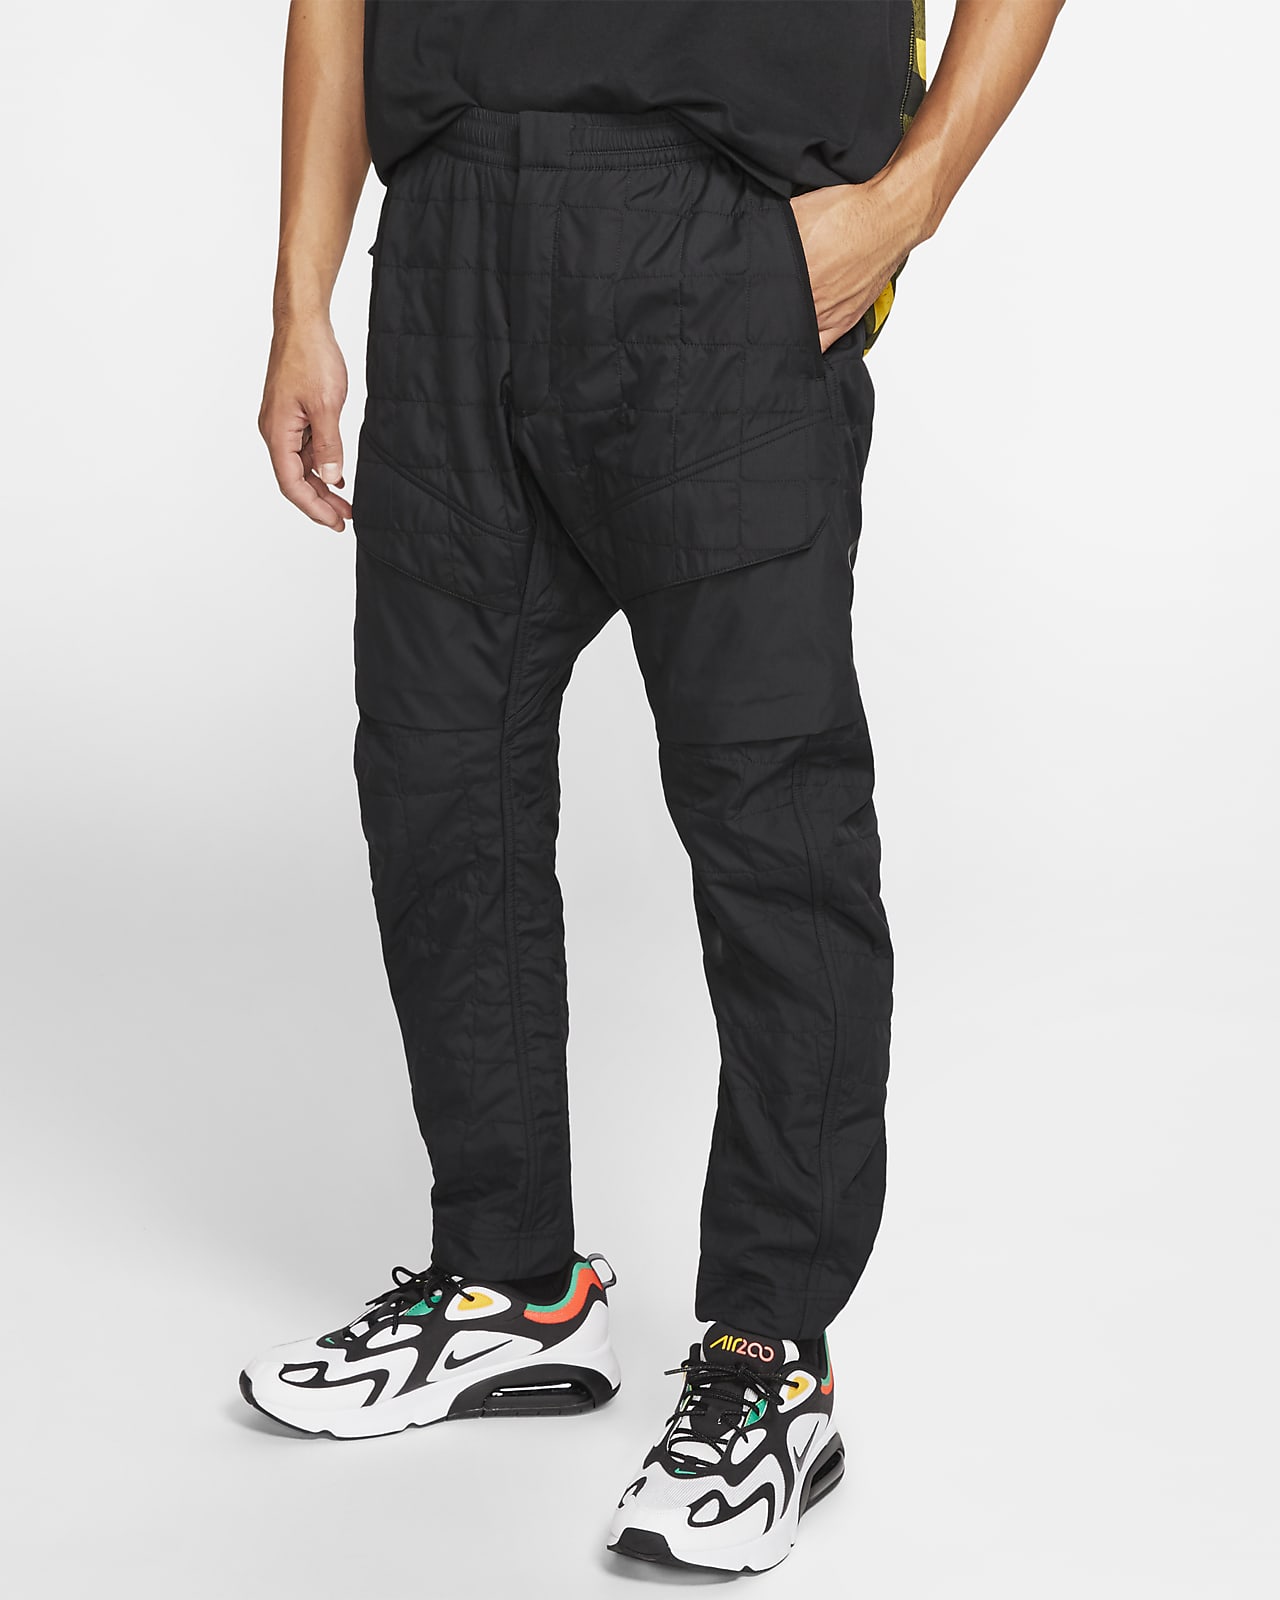 Pantalones de tejido Woven Nike Sportswear Tech Pack. Nike CL